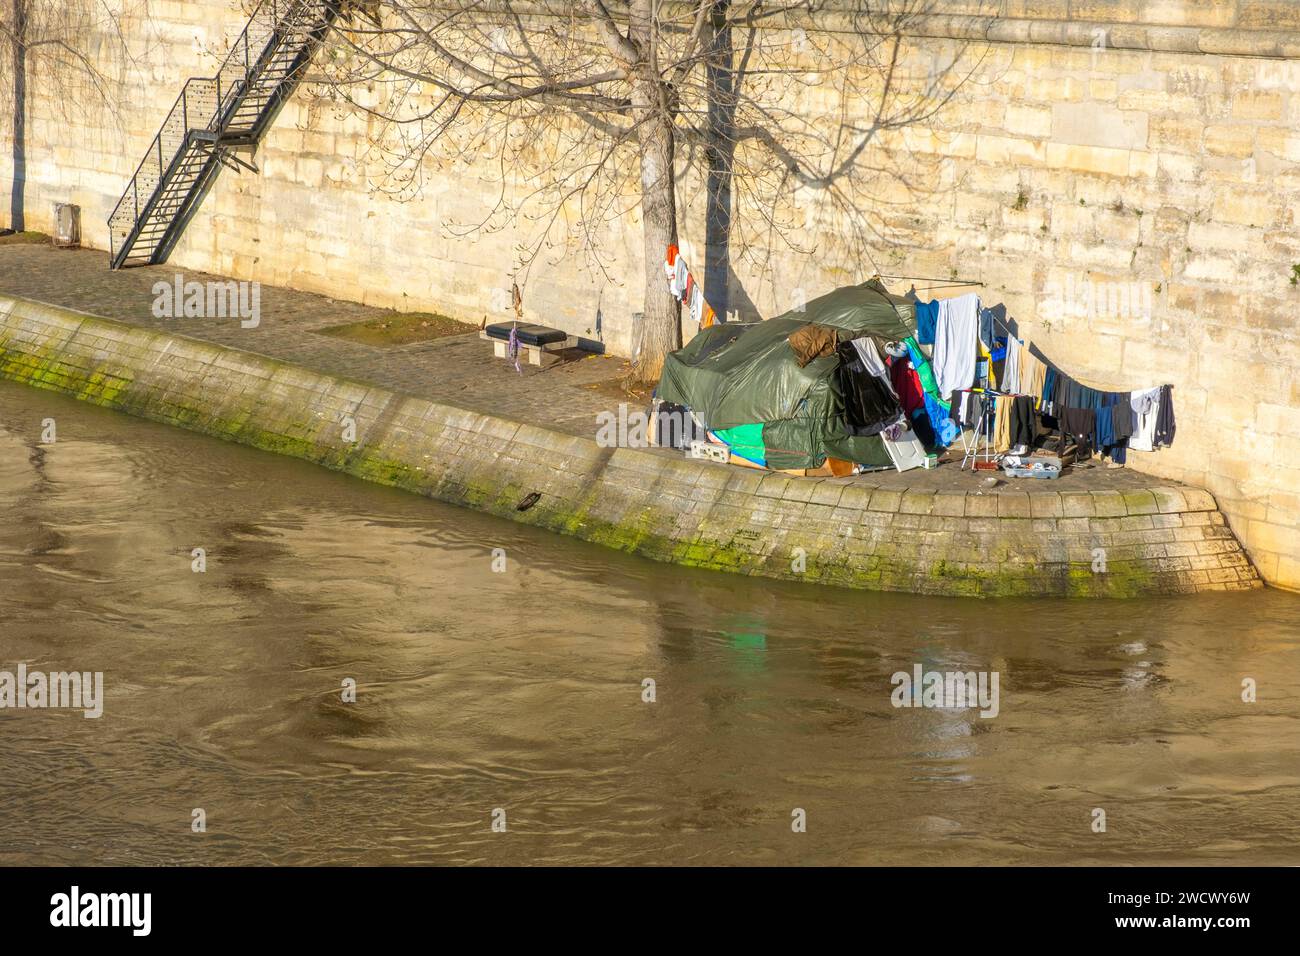 Frankreich, Paris, Ufer der seine, die von der UNESCO zum Weltkulturerbe erklärt wurden, Insel Saint-Louis, Quai d'Orleans, Obdachloses Zelt Stockfoto